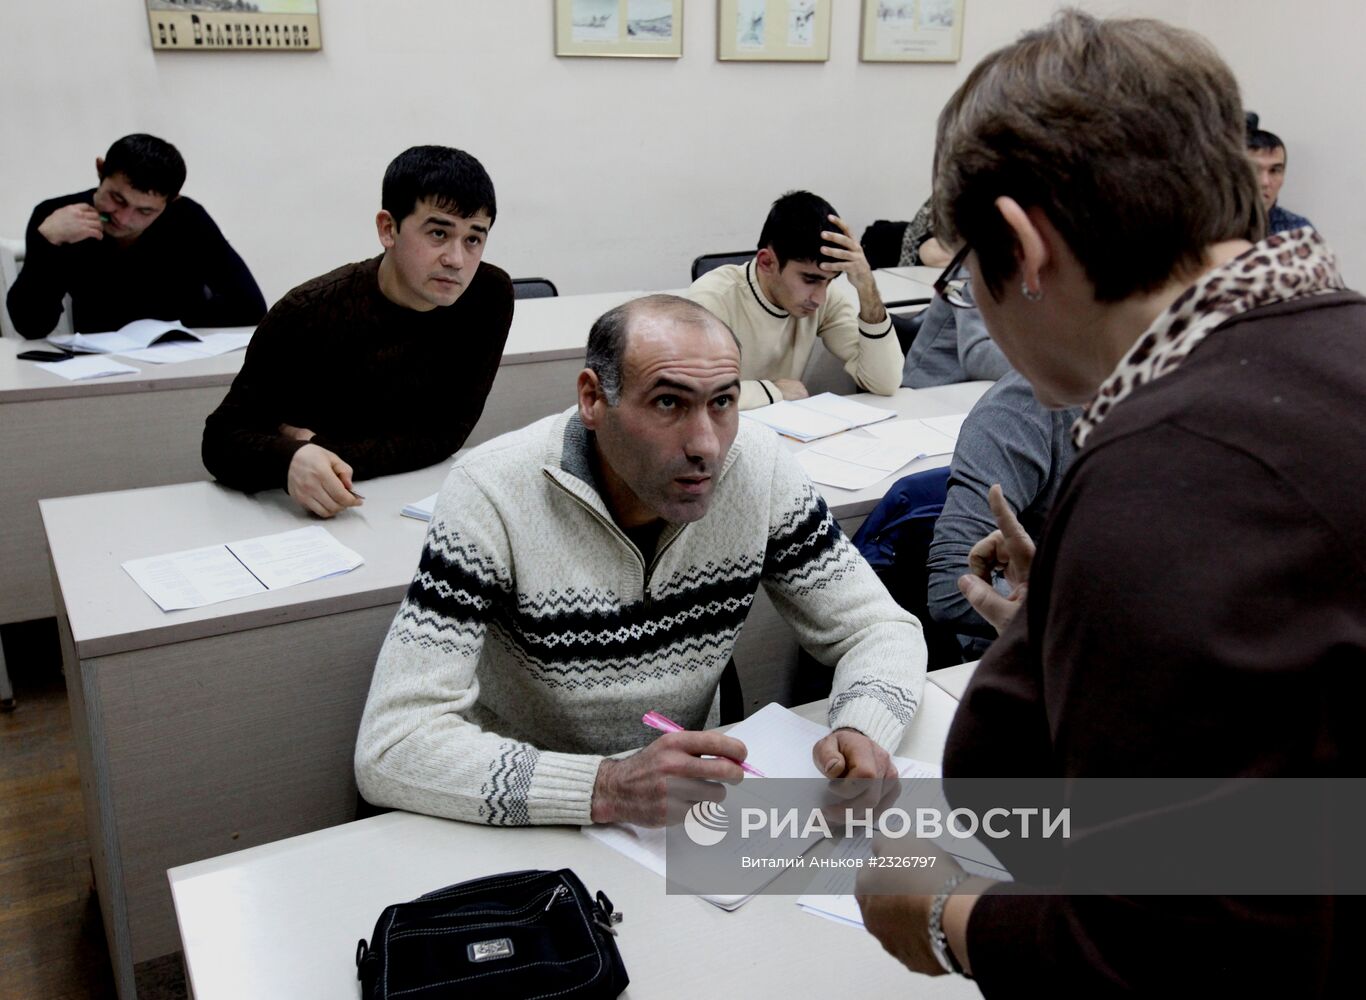 Обучение мигрантов русскому языку в Дальневосточном федеральном университете